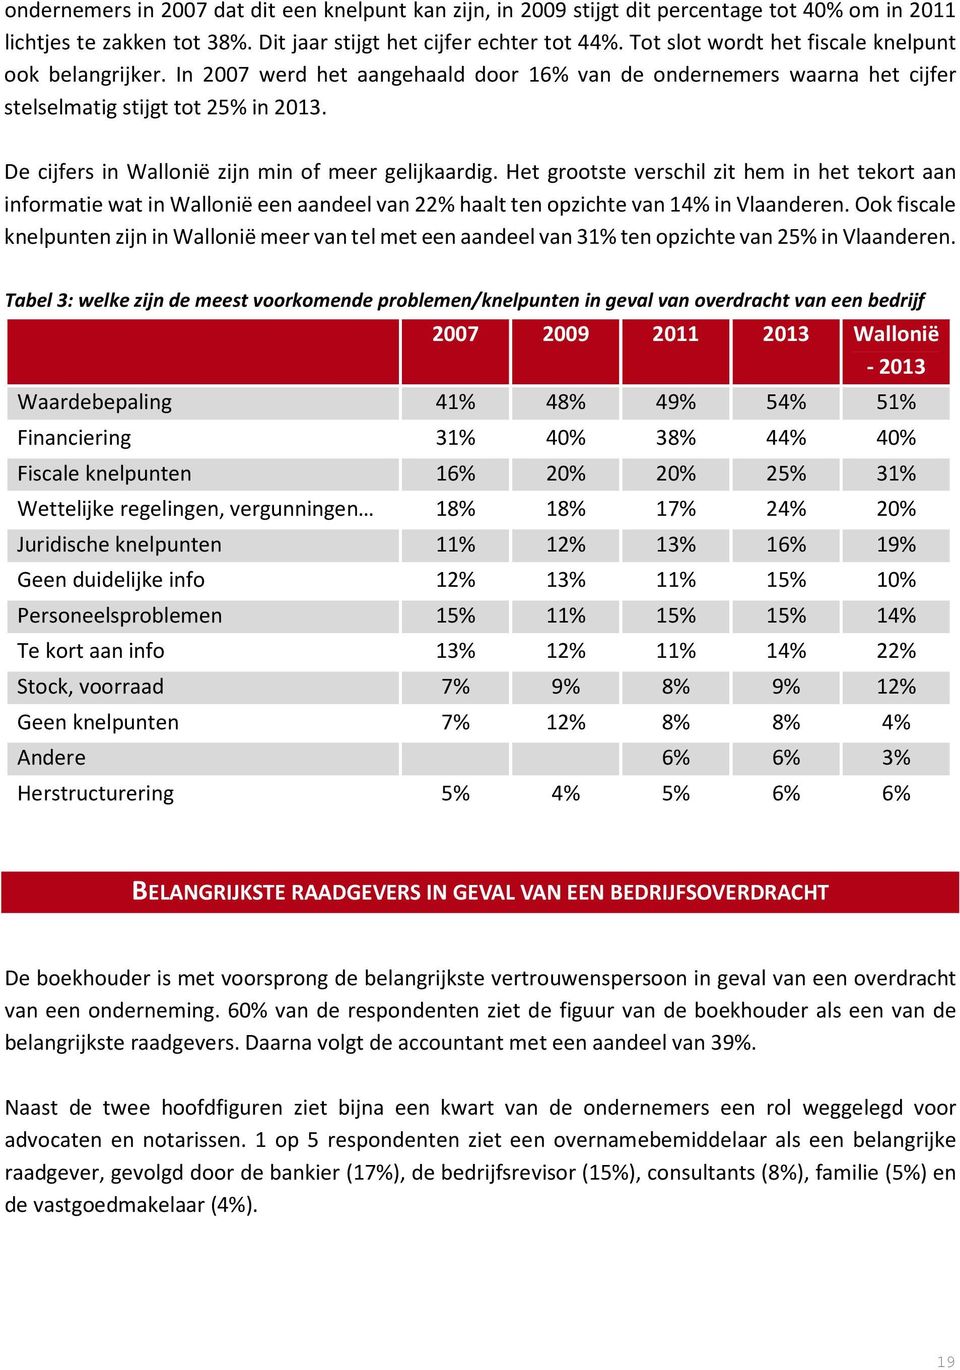 De cijfers in Wallonië zijn min of meer gelijkaardig. Het grootste verschil zit hem in het tekort aan informatie wat in Wallonië een aandeel van 22% haalt ten opzichte van 14% in Vlaanderen.